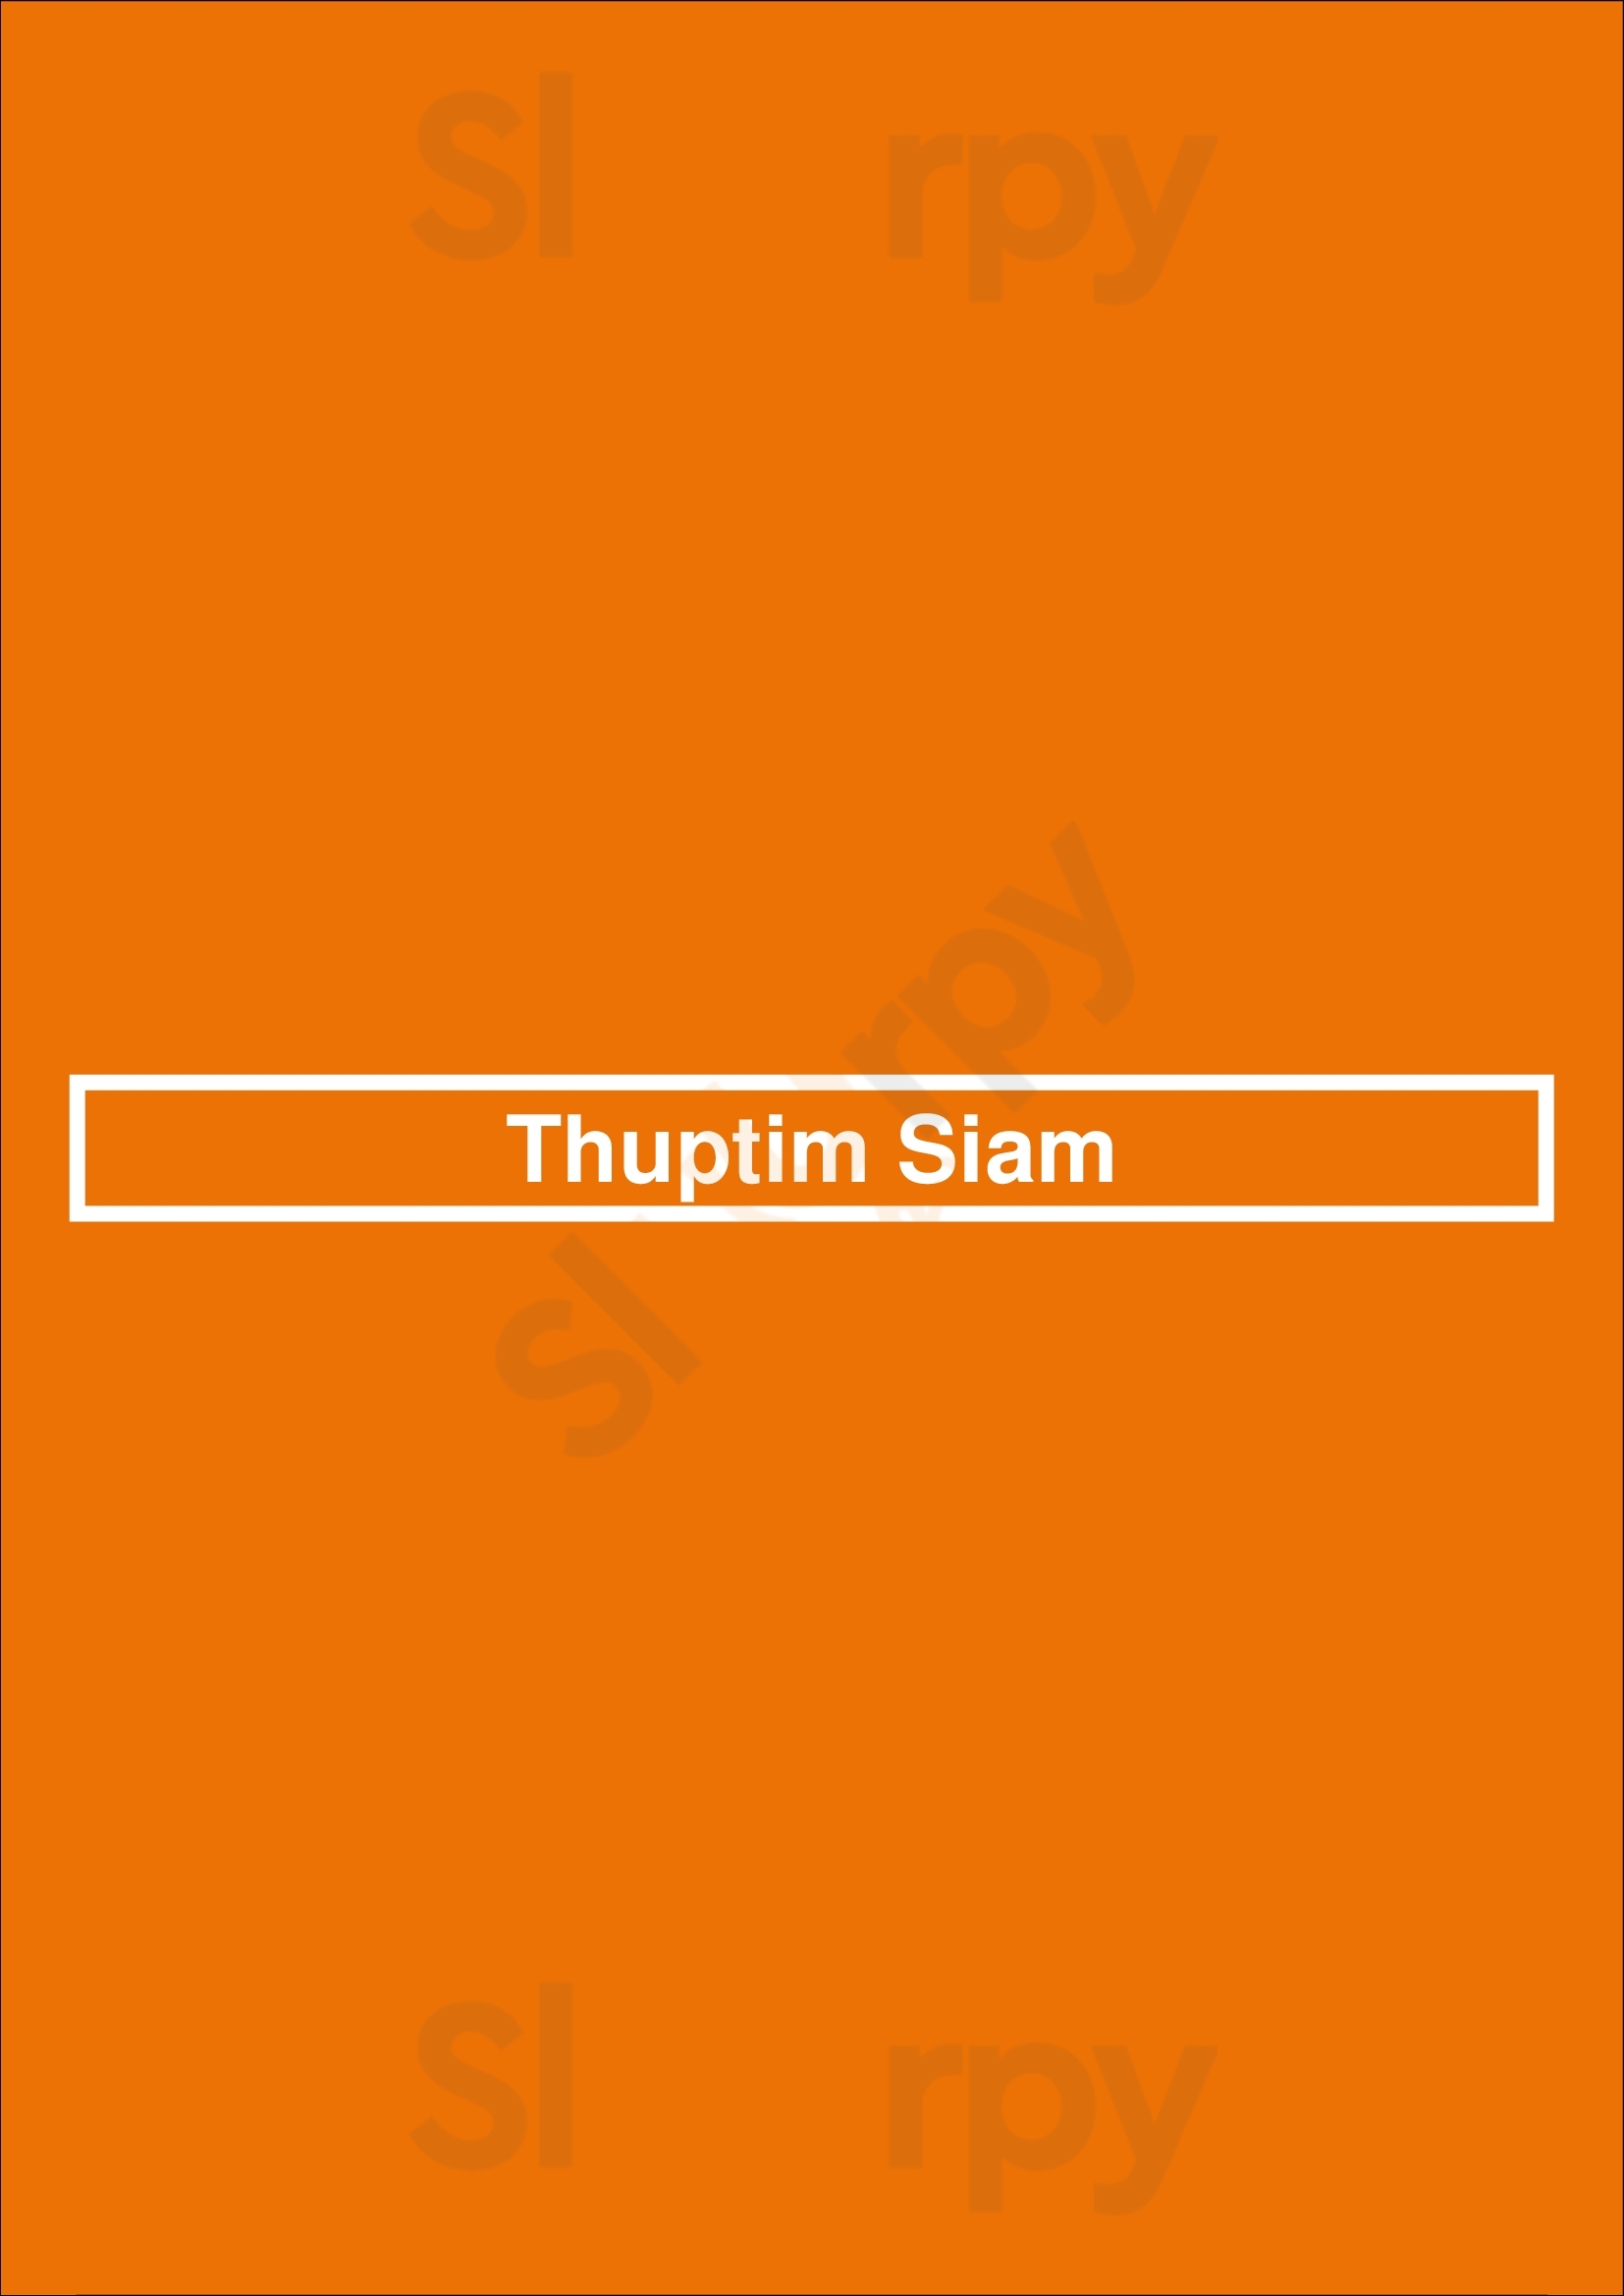 Thuptim Siam Manly Menu - 1